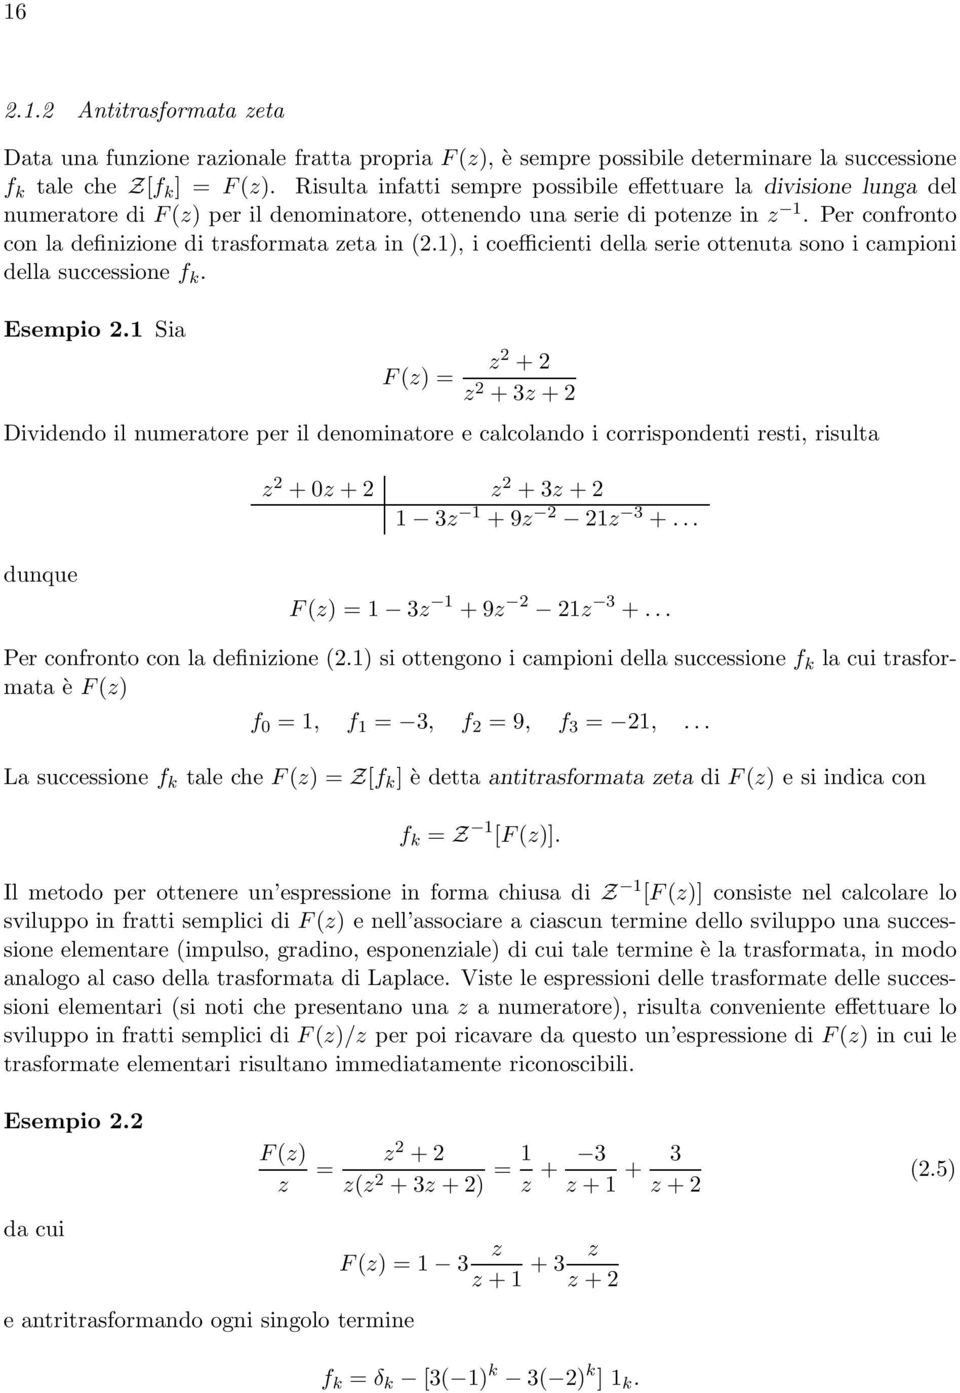 Per confronto con la definizione di trasformata zeta in (2.1), i coefficienti della serie ottenuta sono i campioni della successione f k. Esempio 2.